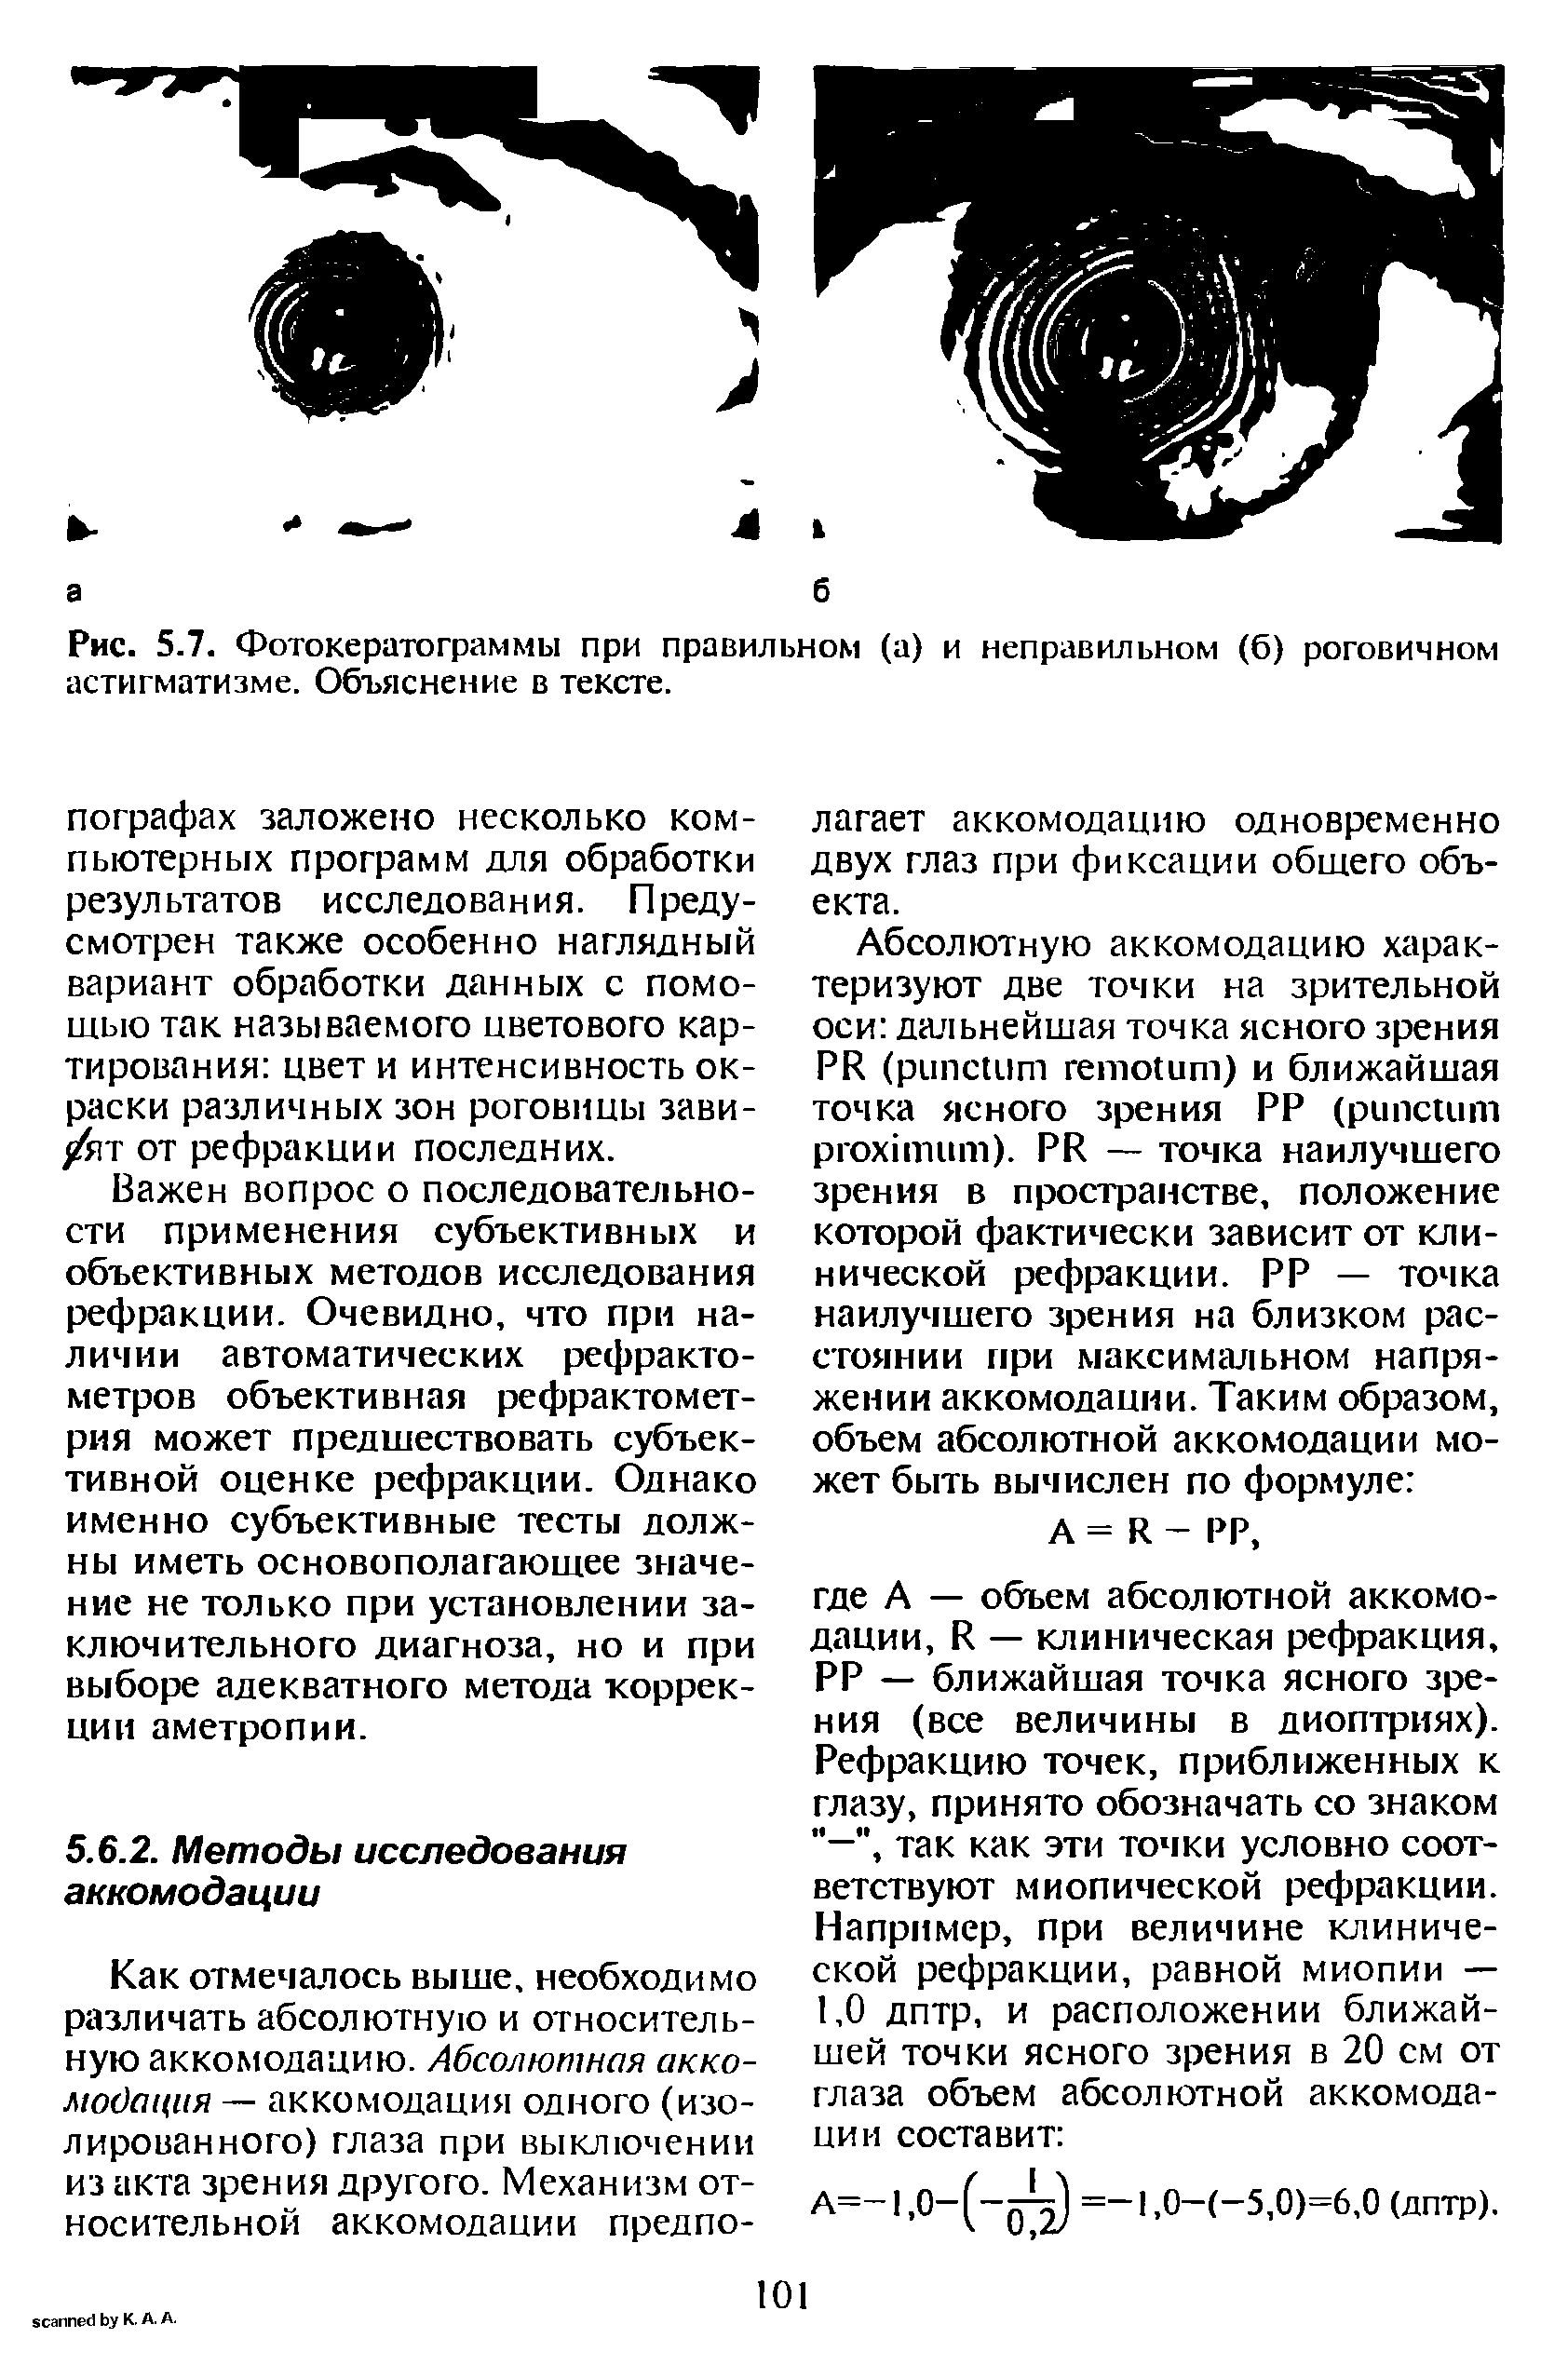 Рис. 5.7. Фотокератограммы при правильном (а) и неправильном (б) роговичном астигматизме. Объяснение в тексте.